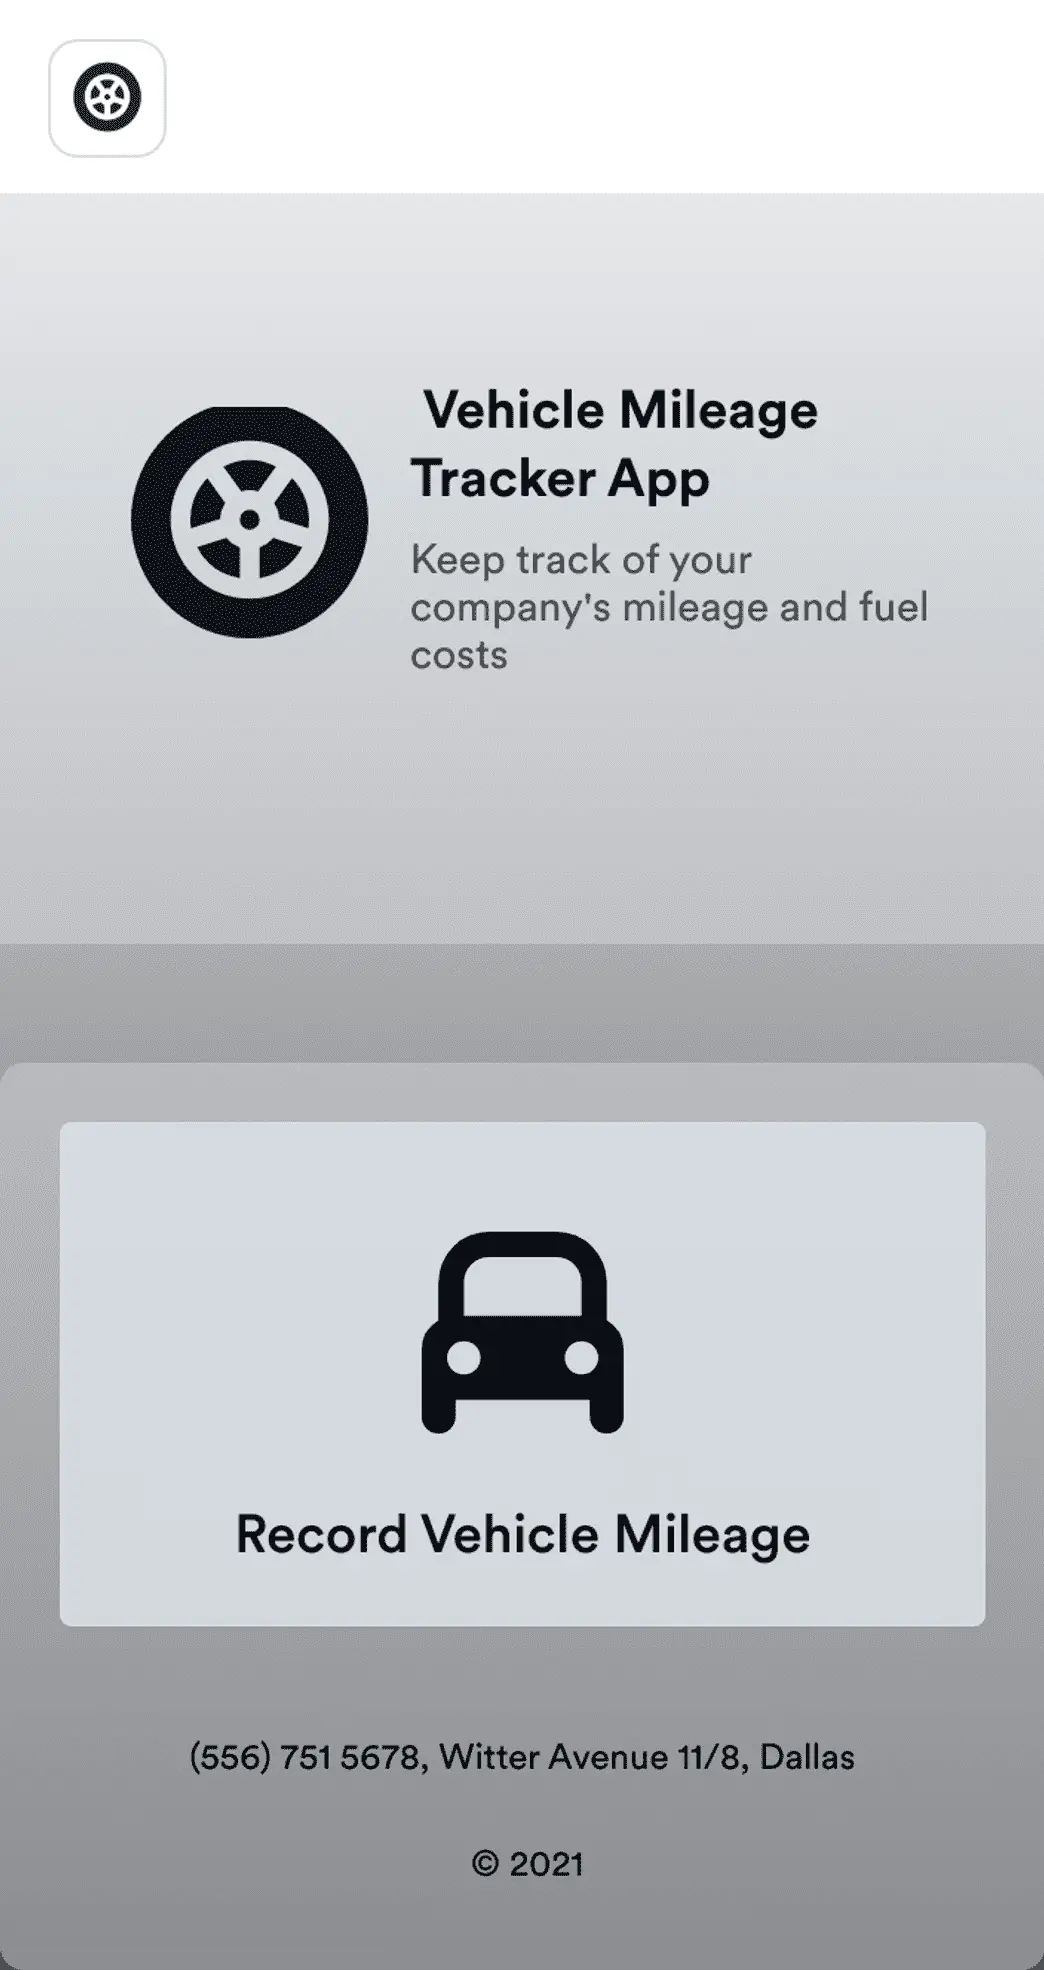 Vehicle Mileage Tracker App